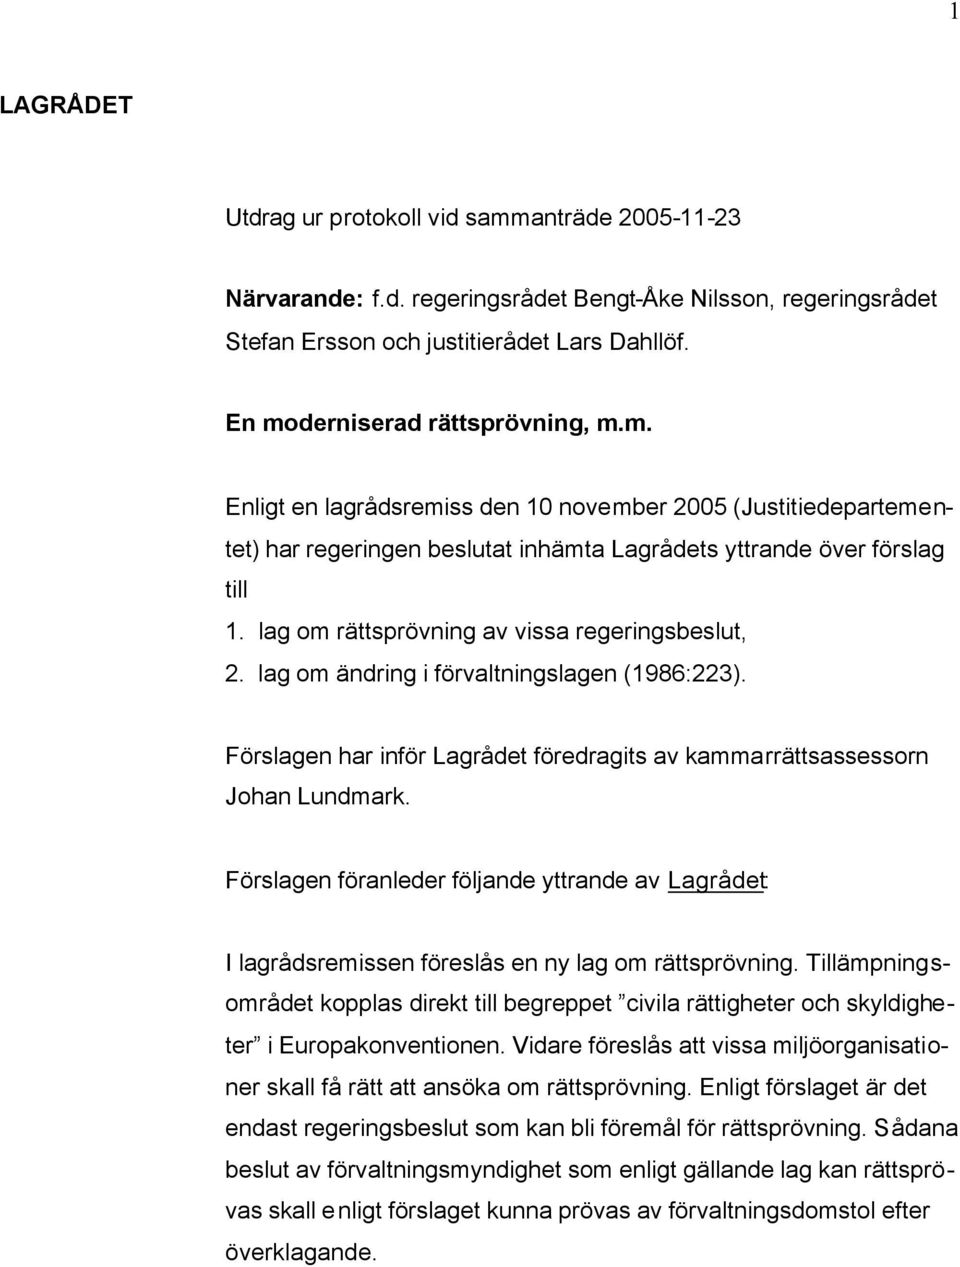 lag om rättsprövning av vissa regeringsbeslut, 2. lag om ändring i förvaltningslagen (1986:223). Förslagen har inför Lagrådet föredragits av kammarrättsassessorn Johan Lundmark.